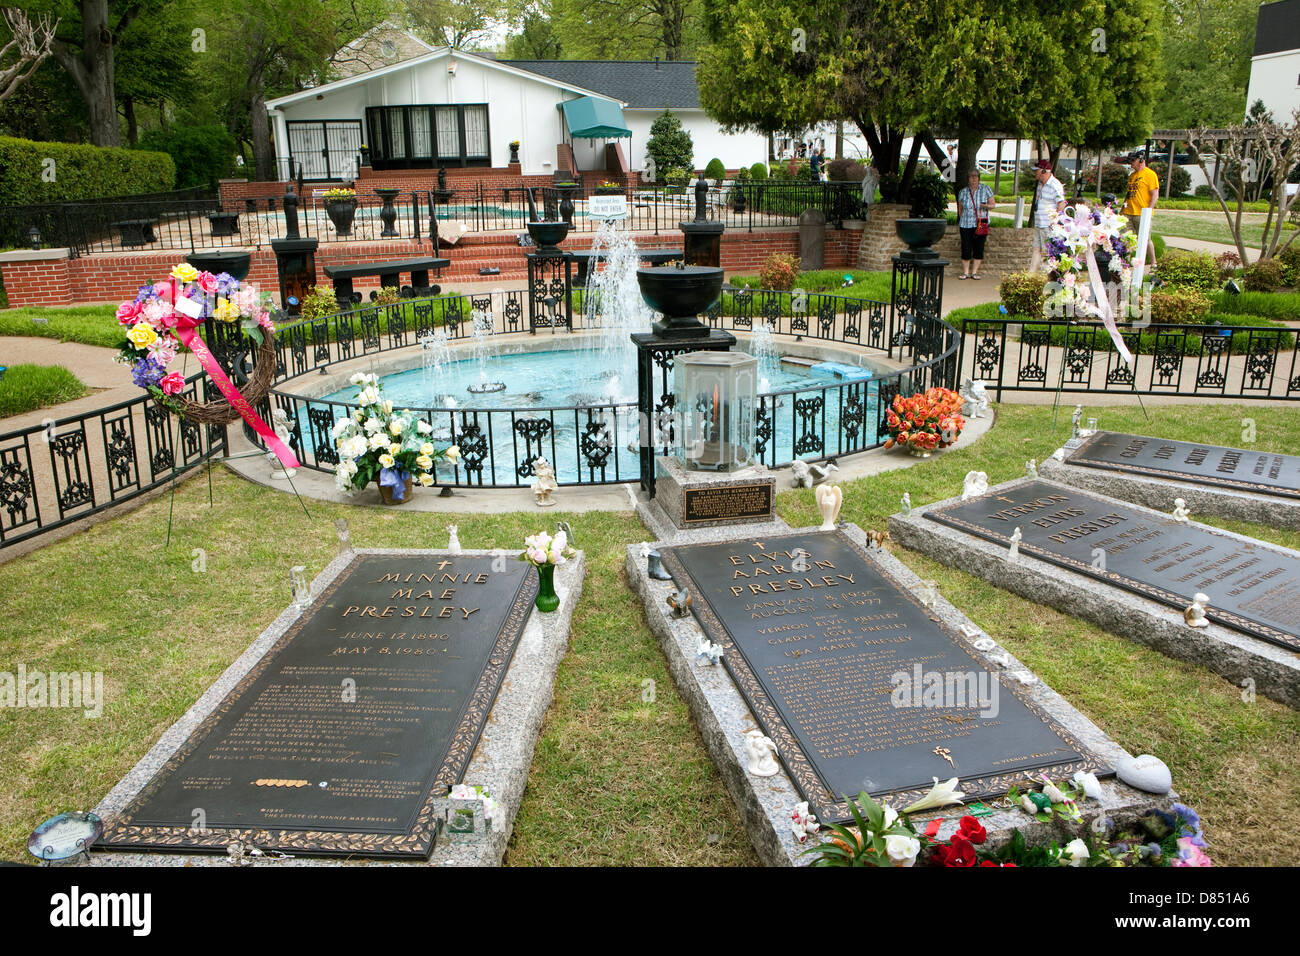 Une vue de la tombe d'Elvis Presley et les membres de sa famille à Graceland à Memphis, Tennessee Banque D'Images